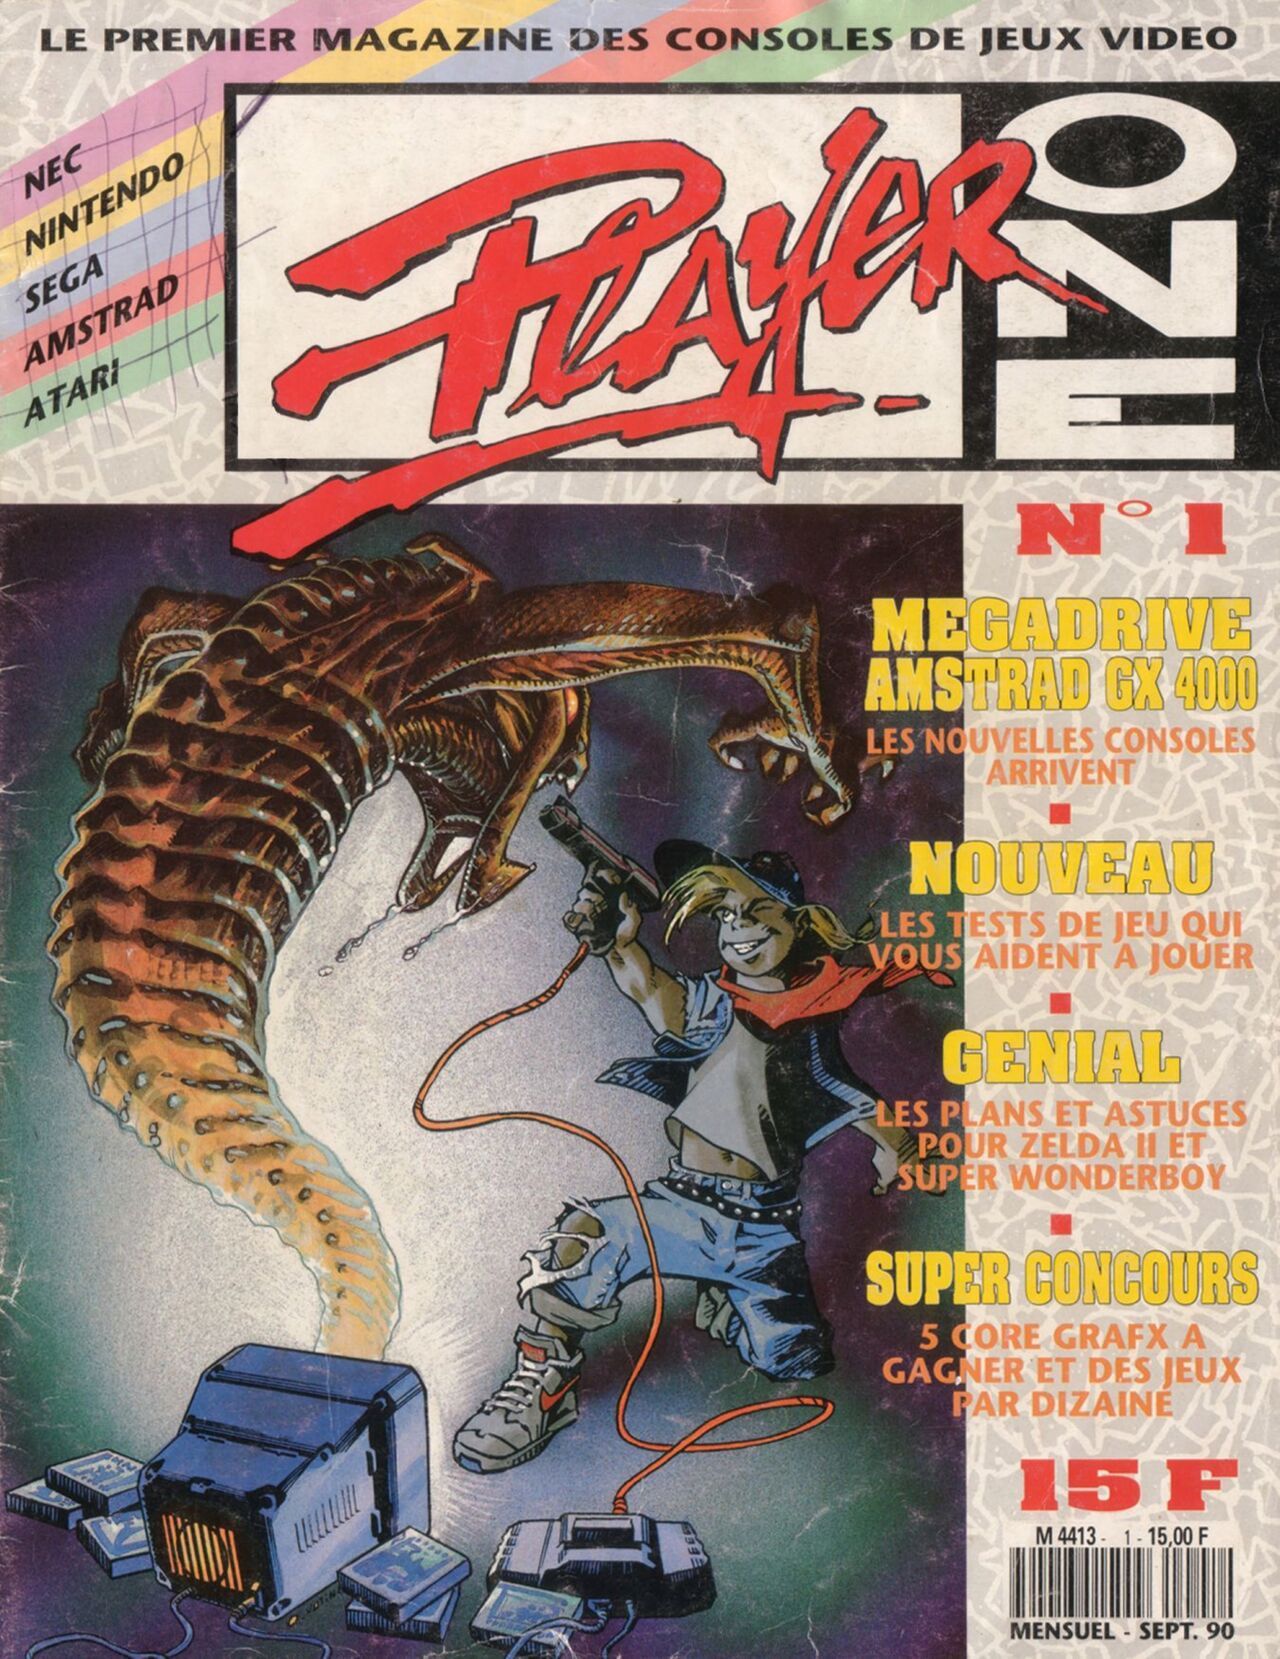 Magazine - Player One 001 (September 1990) 1